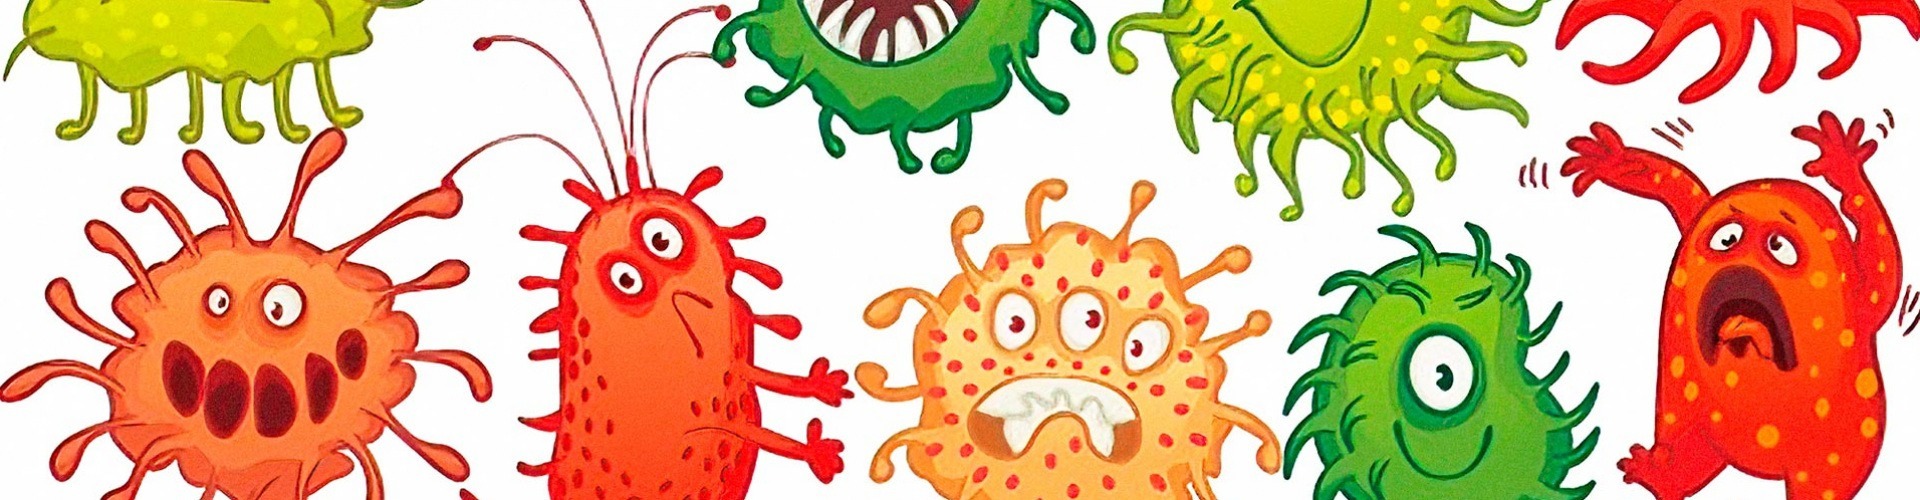 Miért nem ismertük eddig a mikrobiomot?